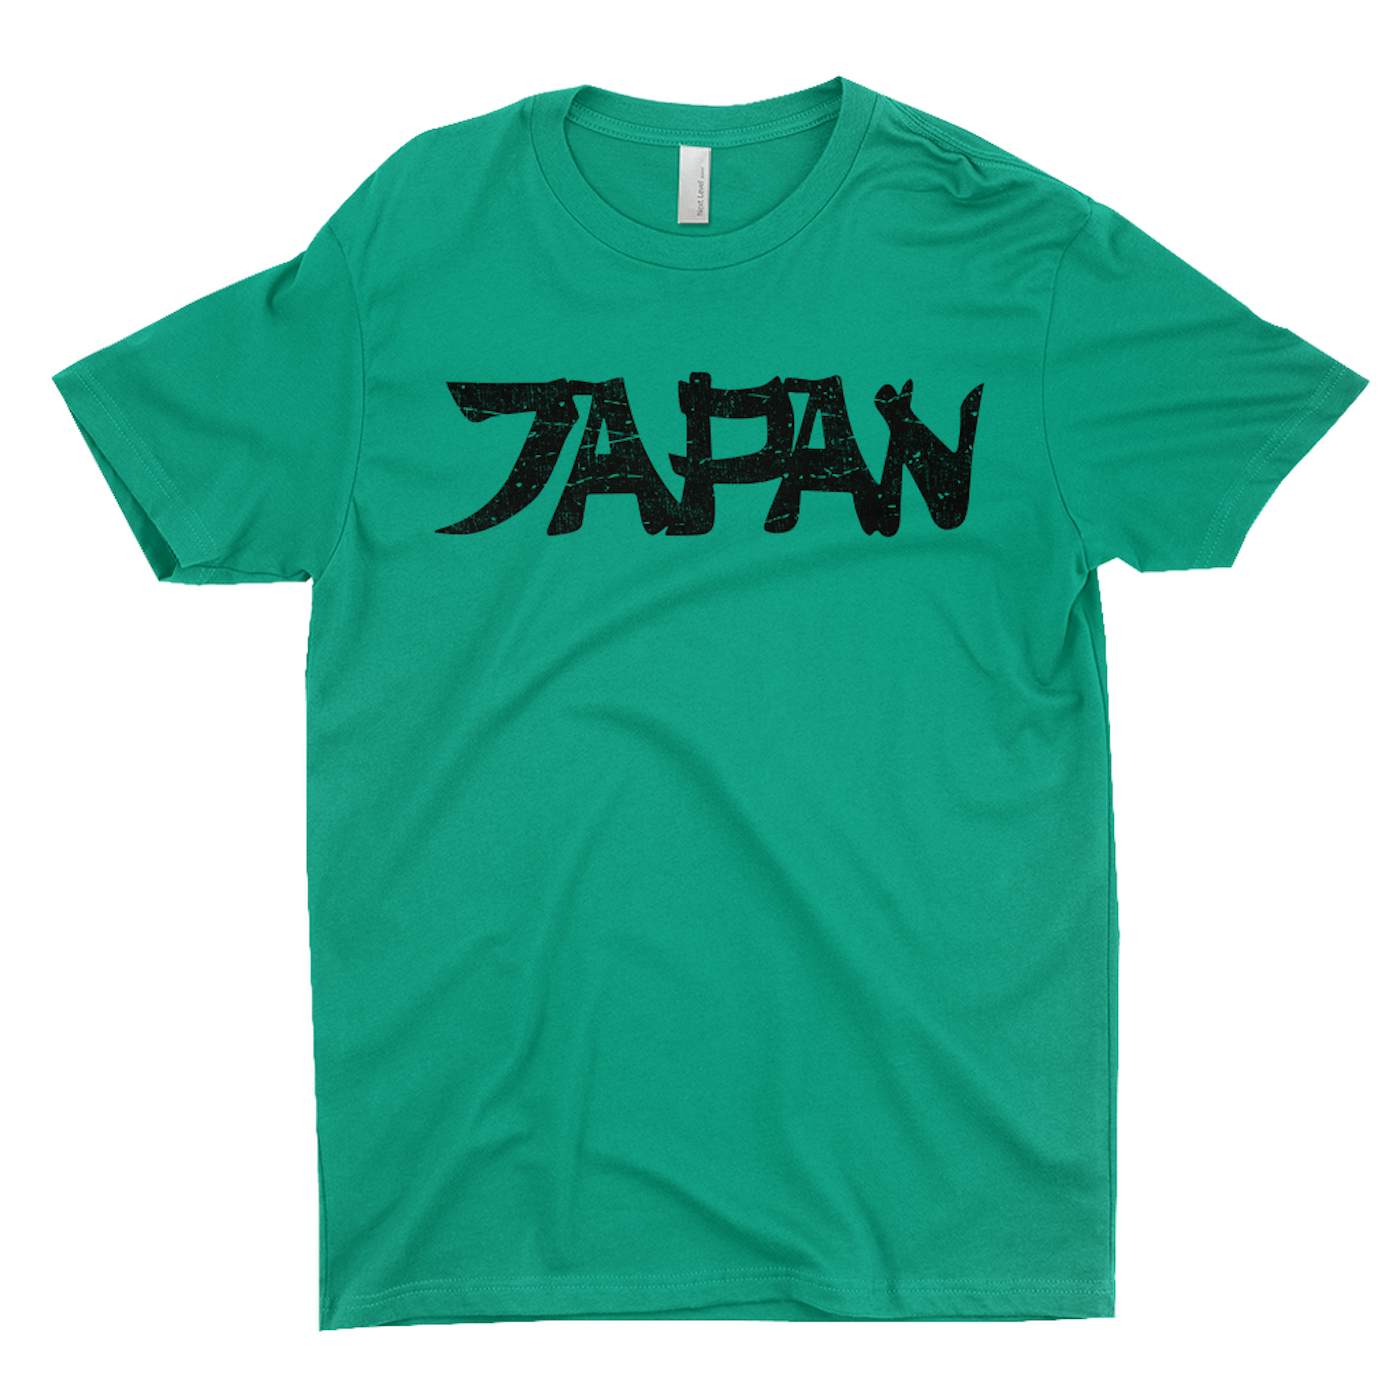 John Lennon T-Shirt | Japan Design Worn by John Lennon John Lennon Shirt